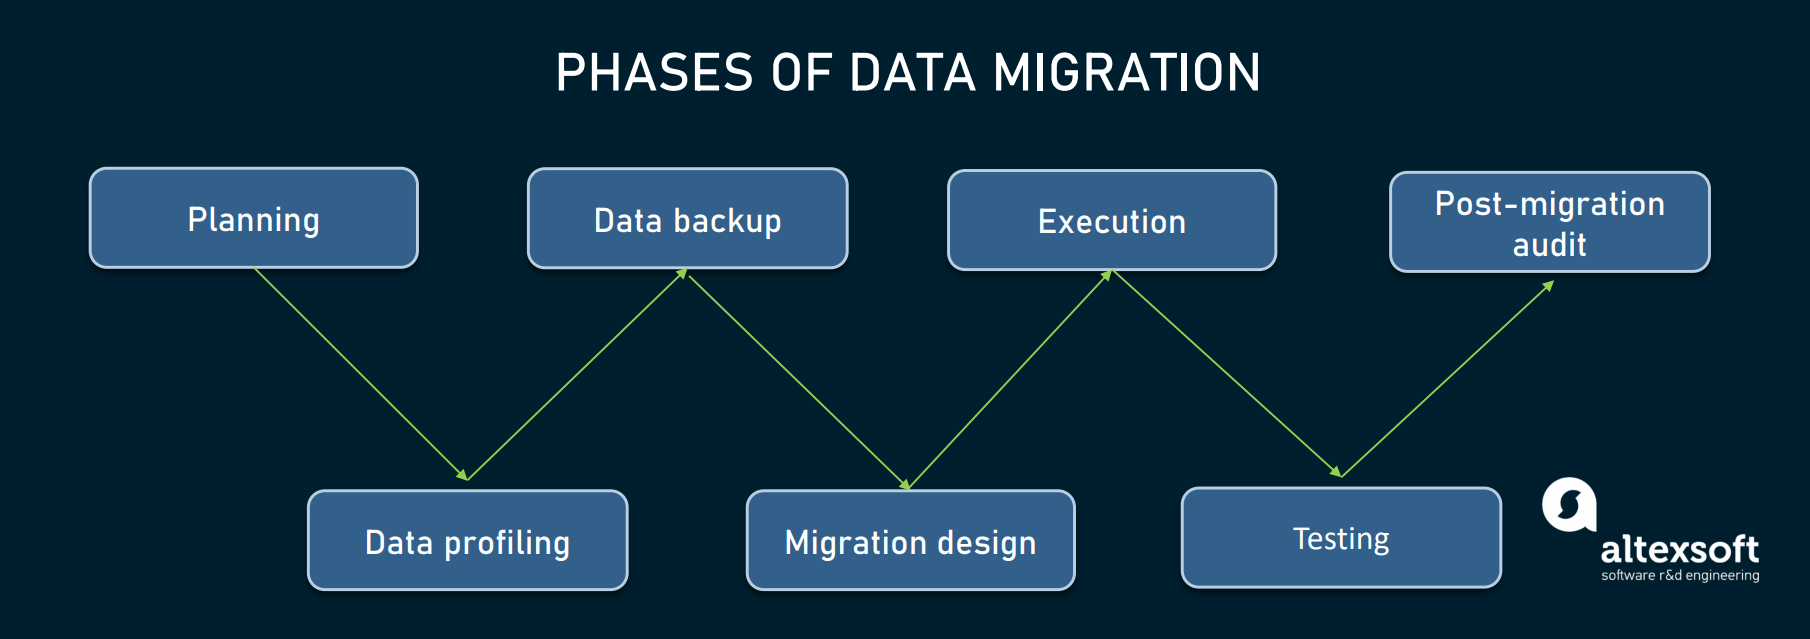 Migration: Process, Strategy, and Key Steps | AltexSoft